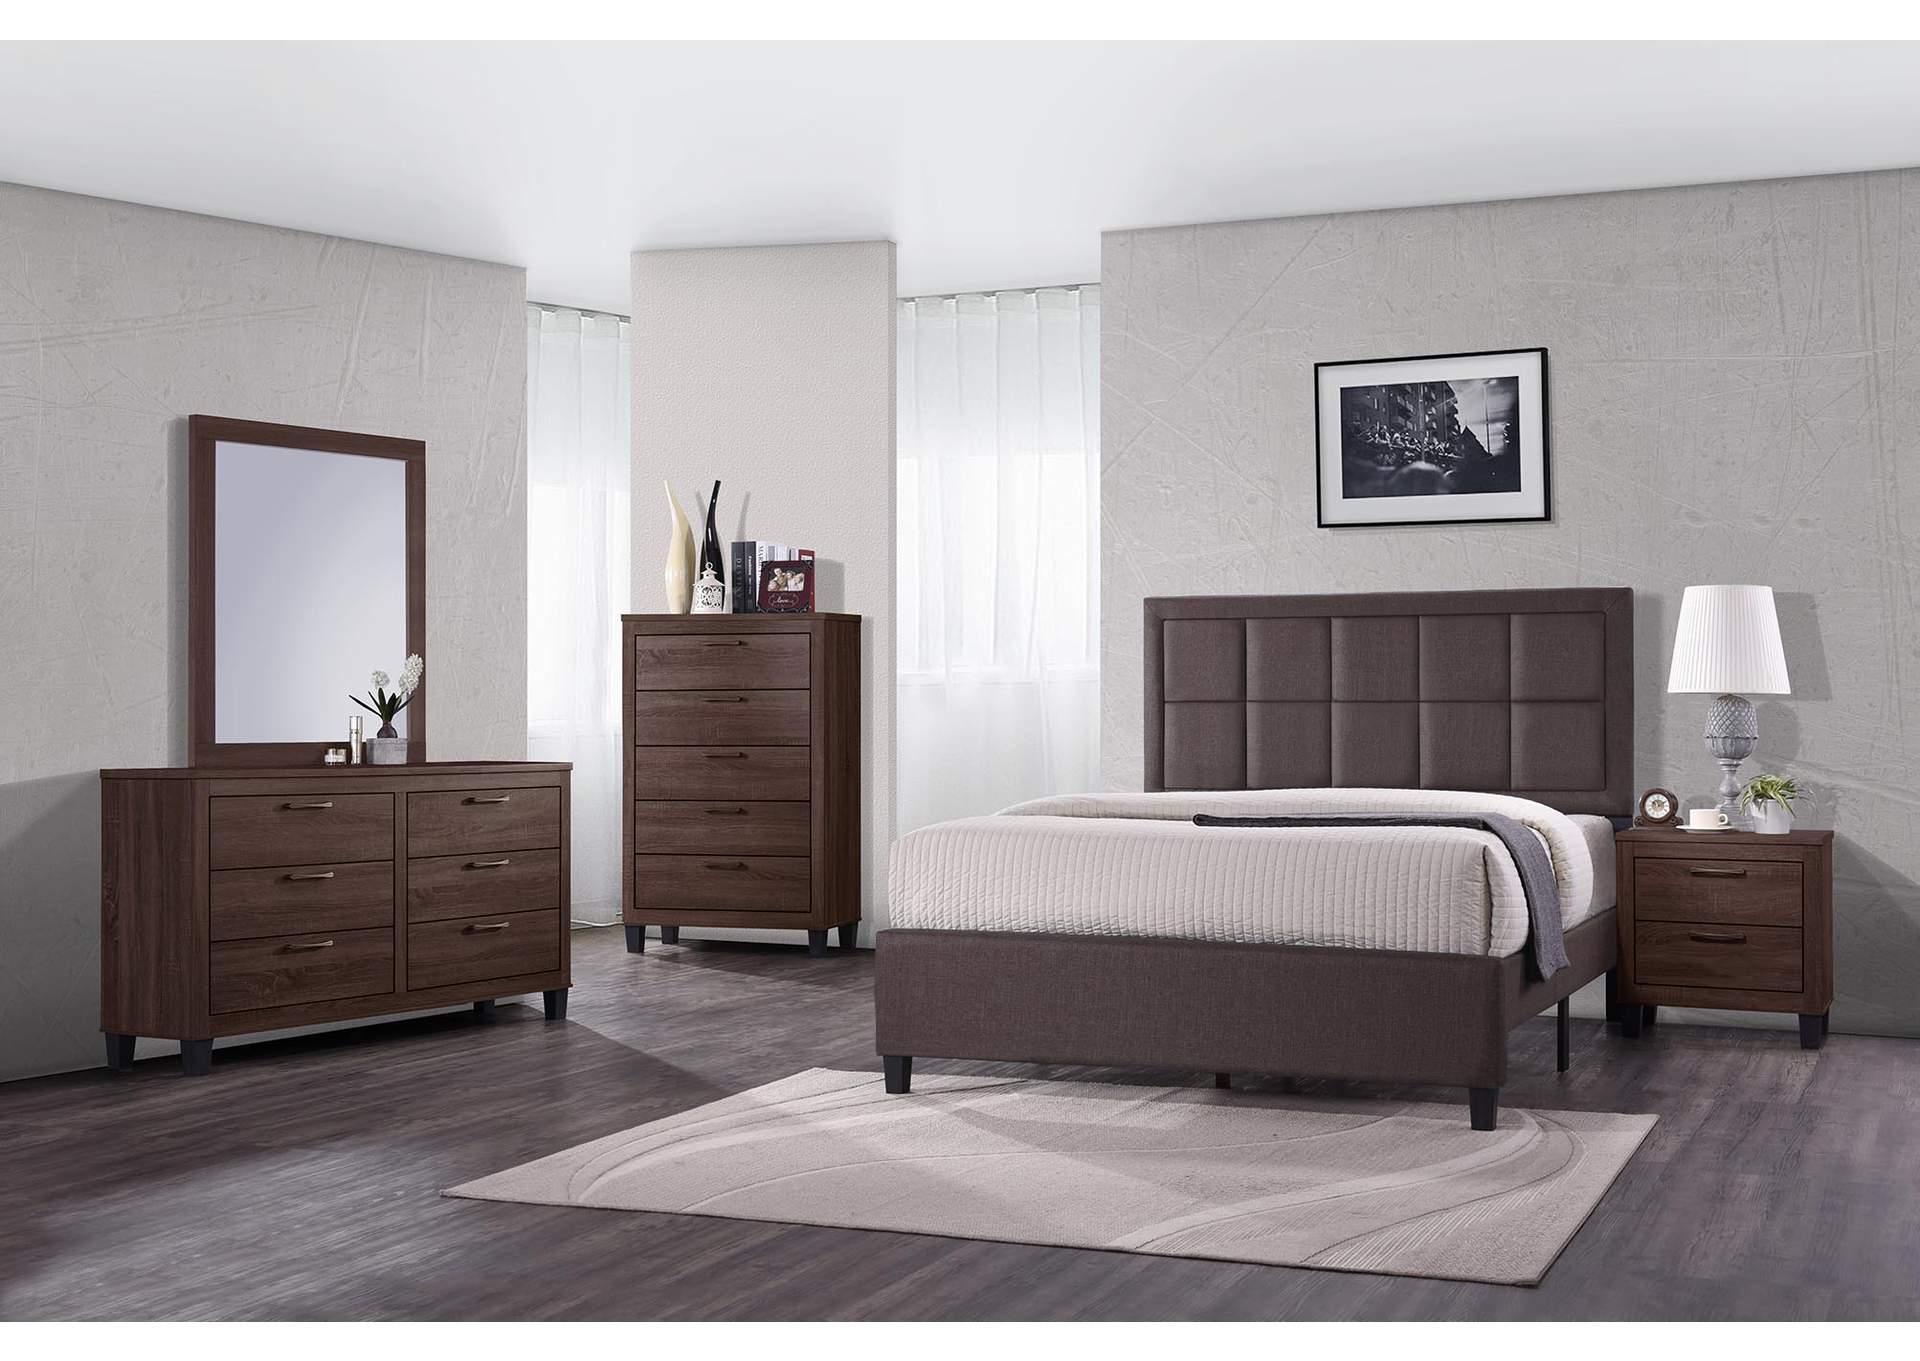 Grey & Brown Panel Queen 5 Piece Bedroom Set W/ Nightstand, Chest, Dresser & Mirror,Global Trading